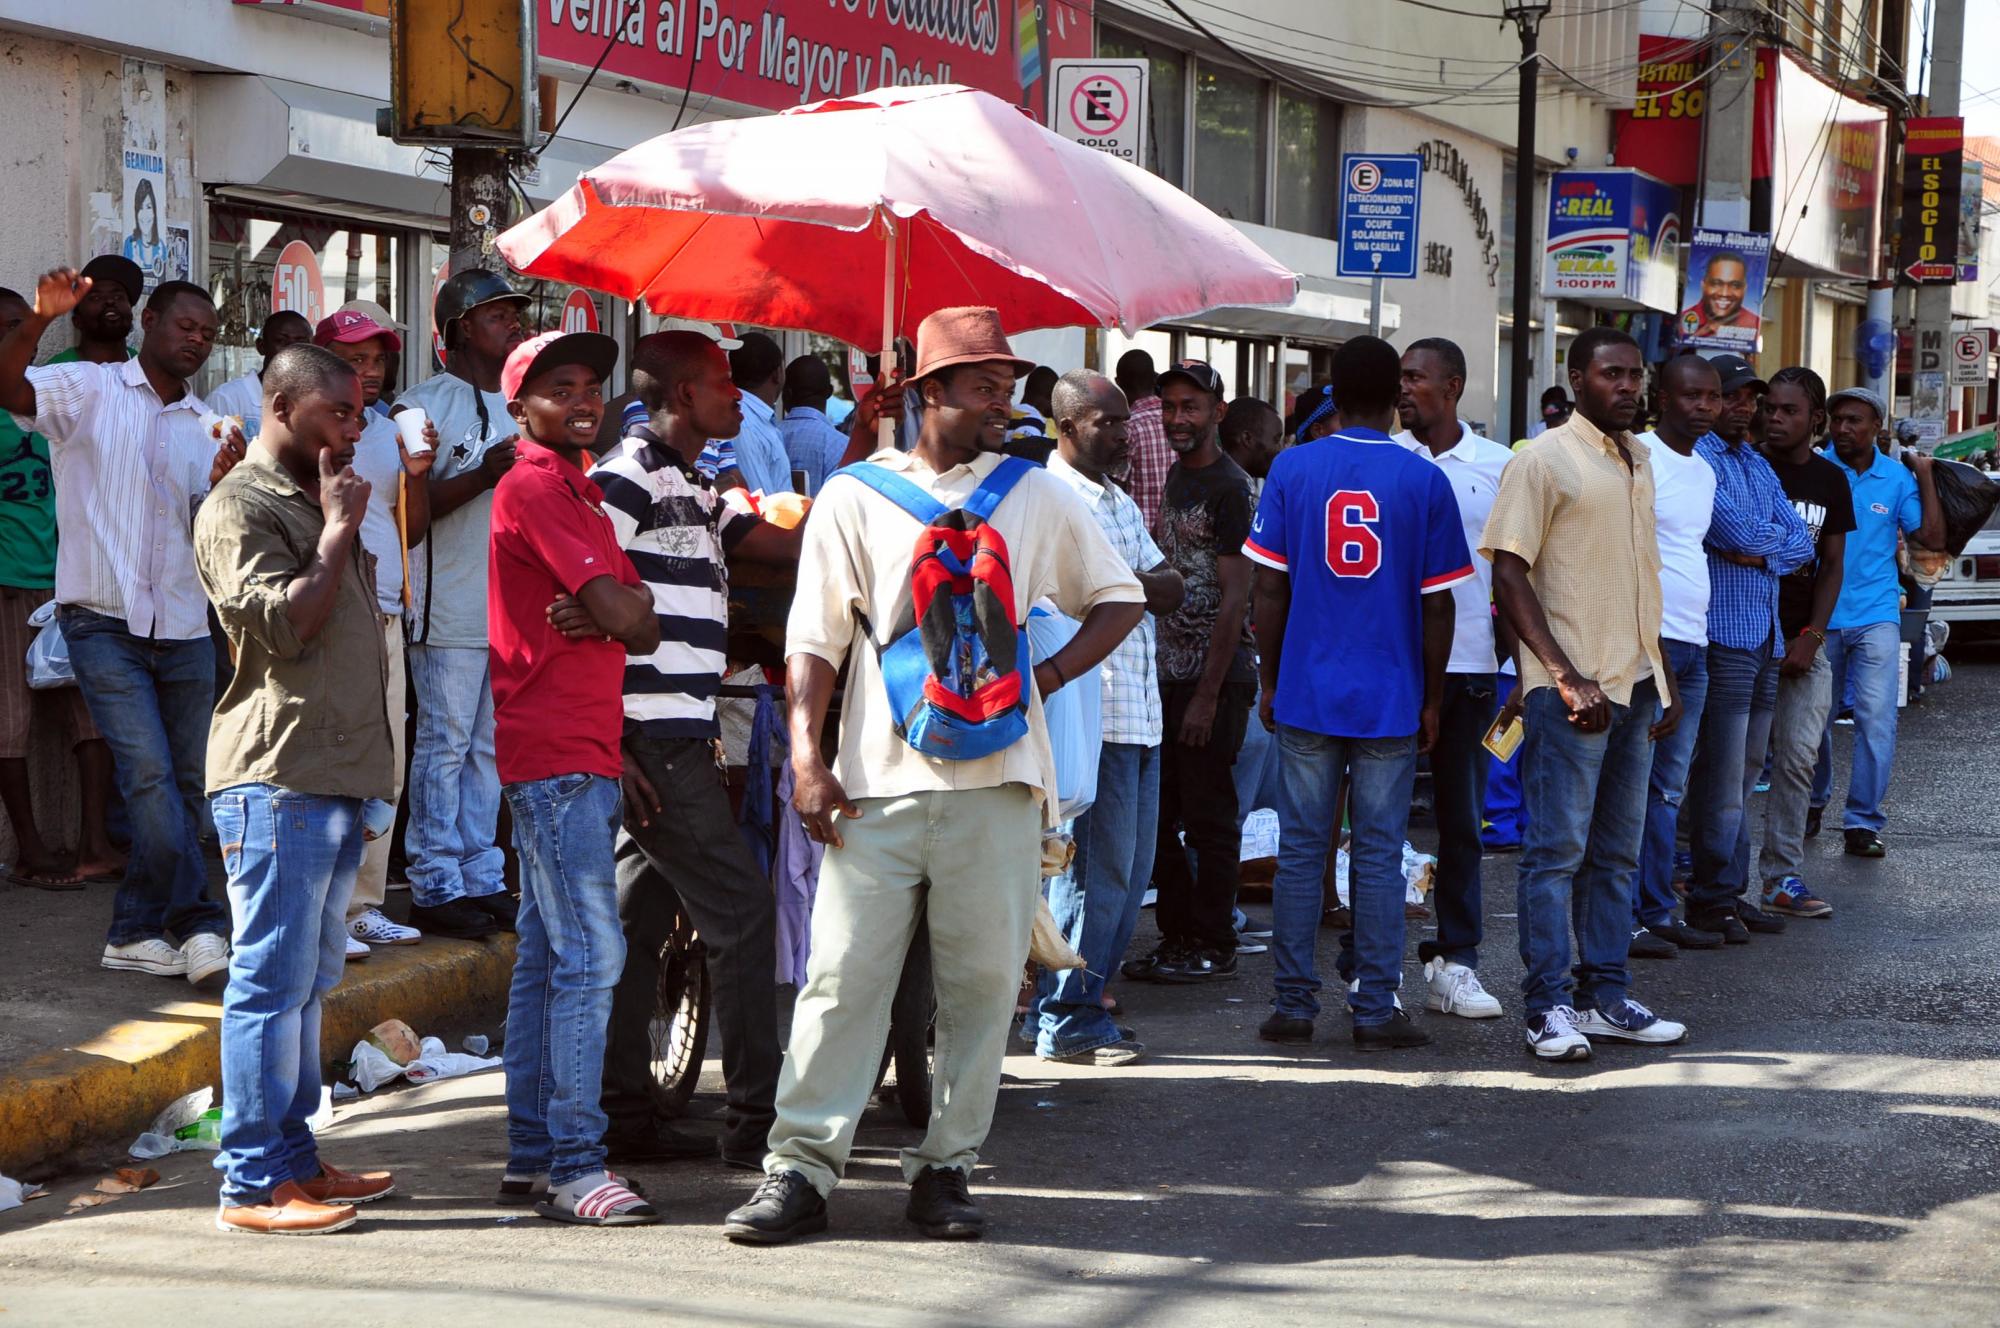 Se pudo constatar que “buscones” y agentes policiales o militares extorsionan a los haitianos con la oferta de “ayudarles” a conseguir el carné